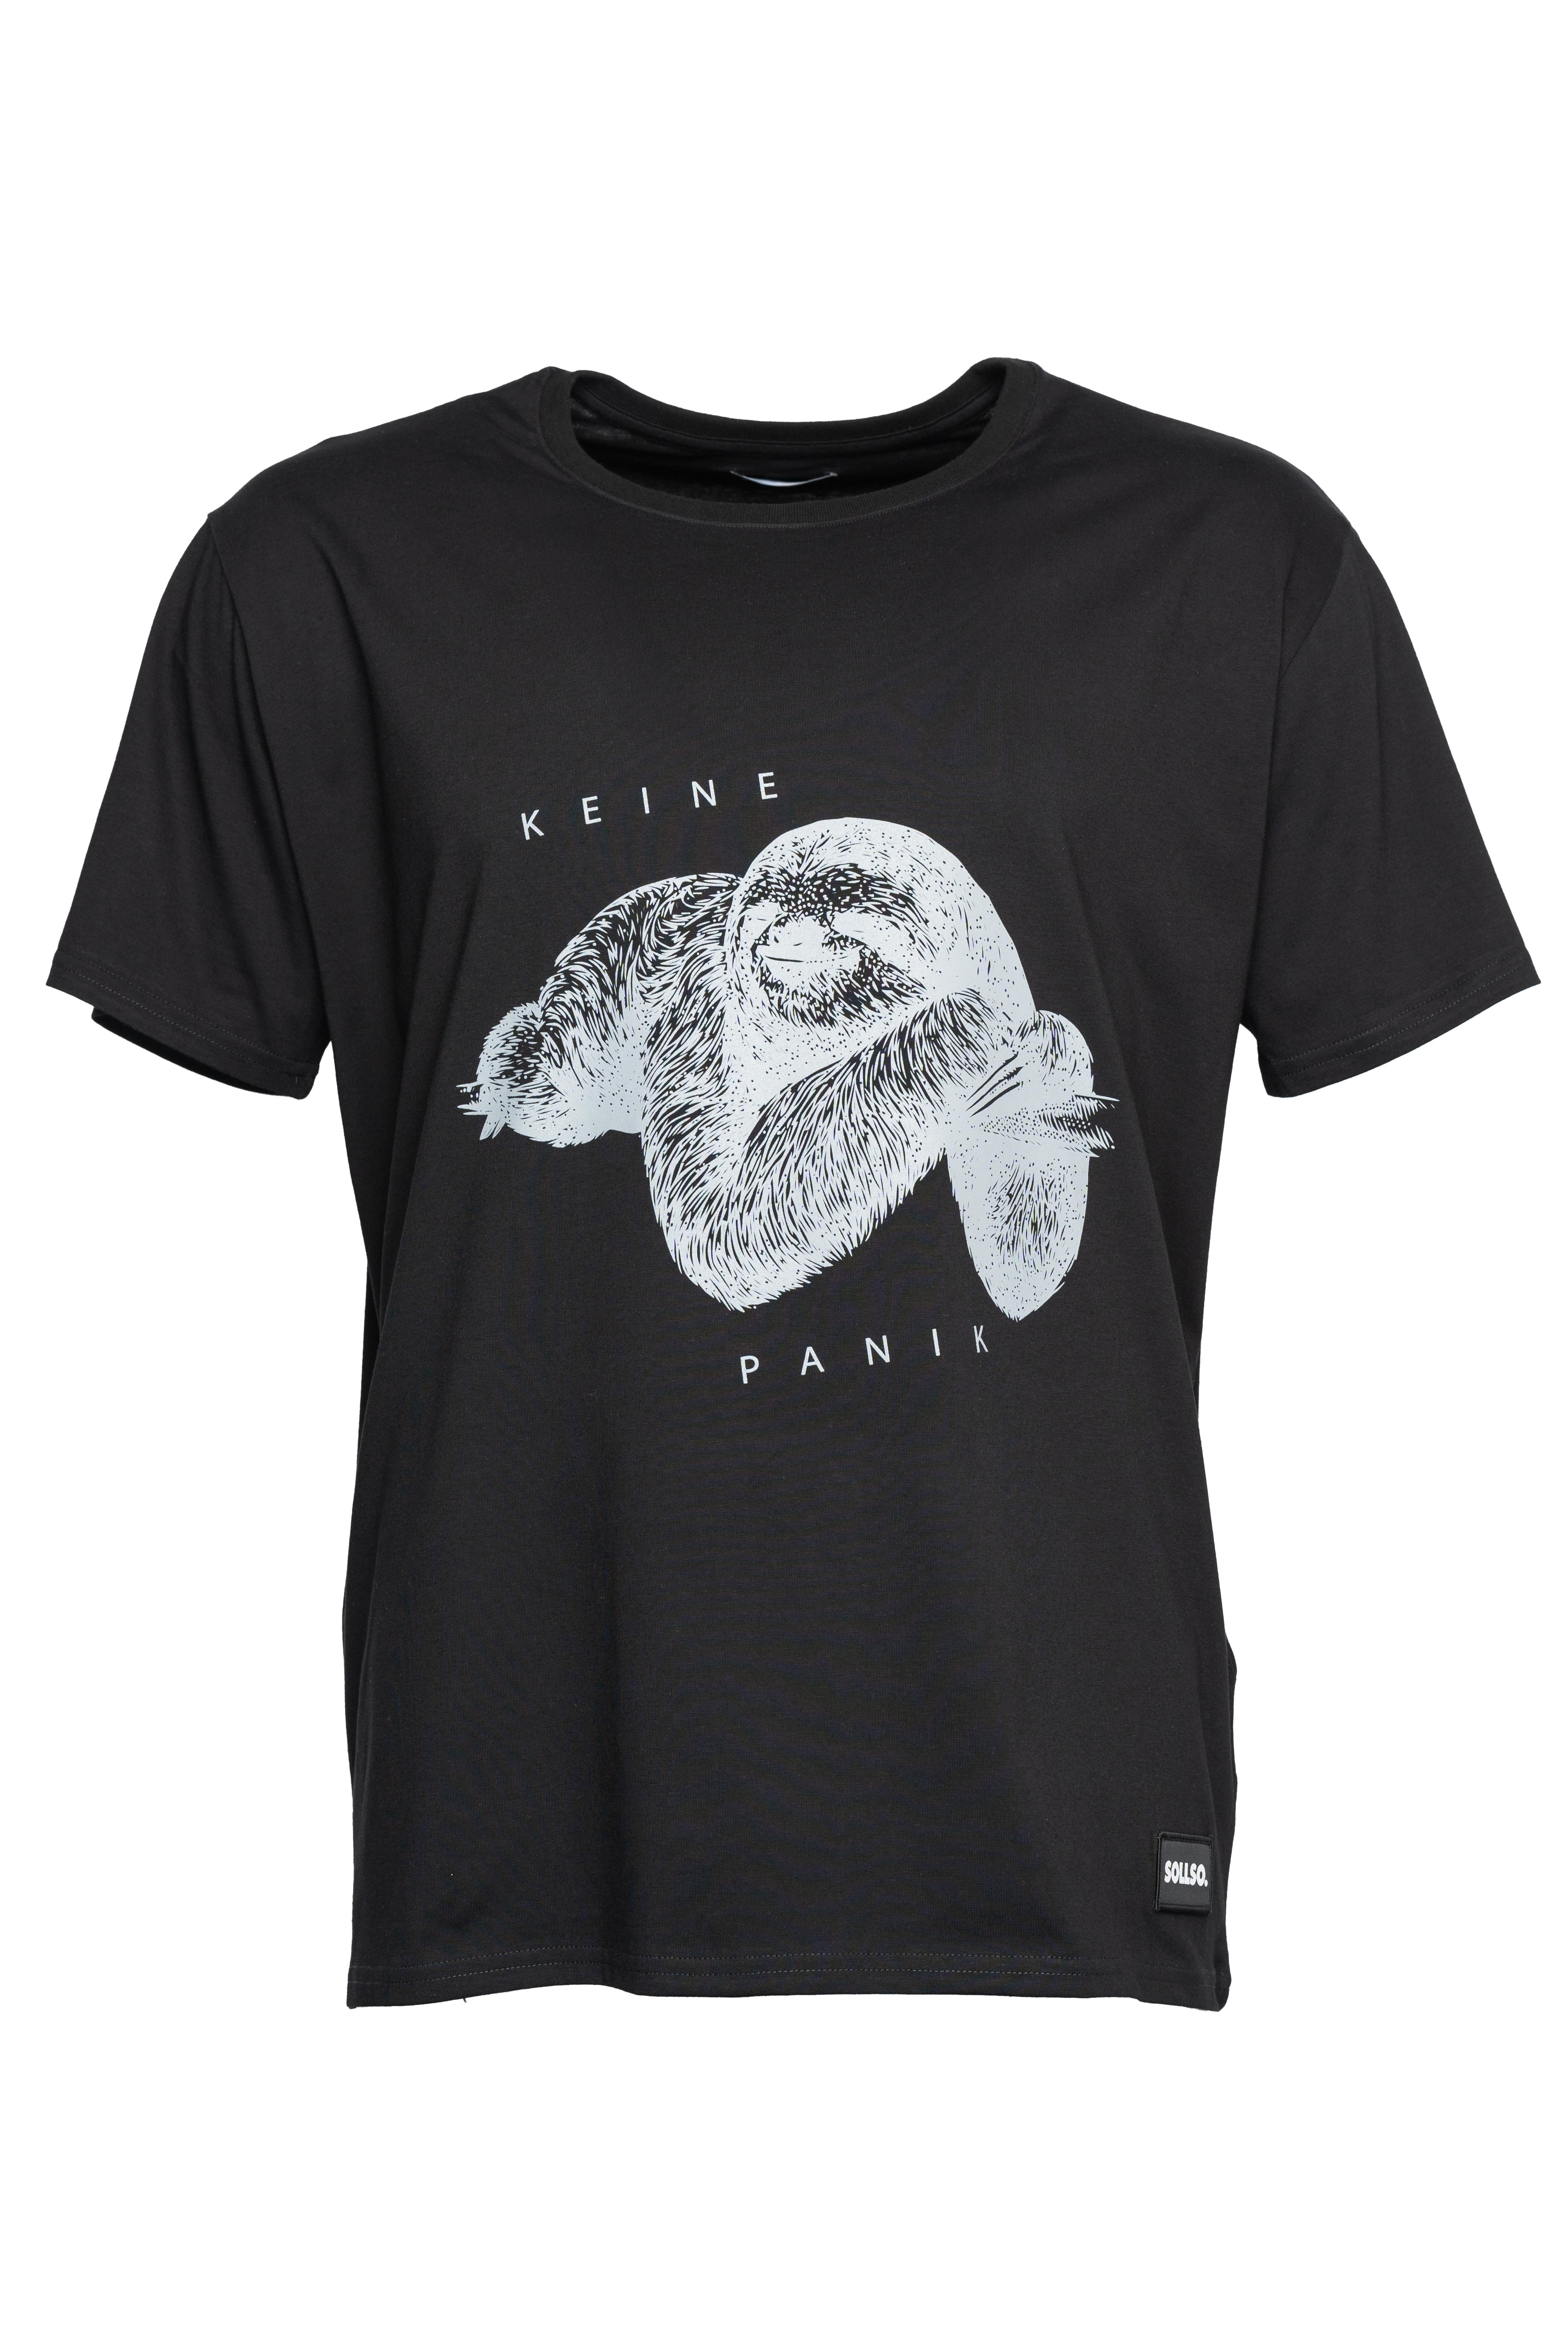 SOLLSO. T-Shirt "Keine Panik Faultier", Farbe Dark Black, Größe L